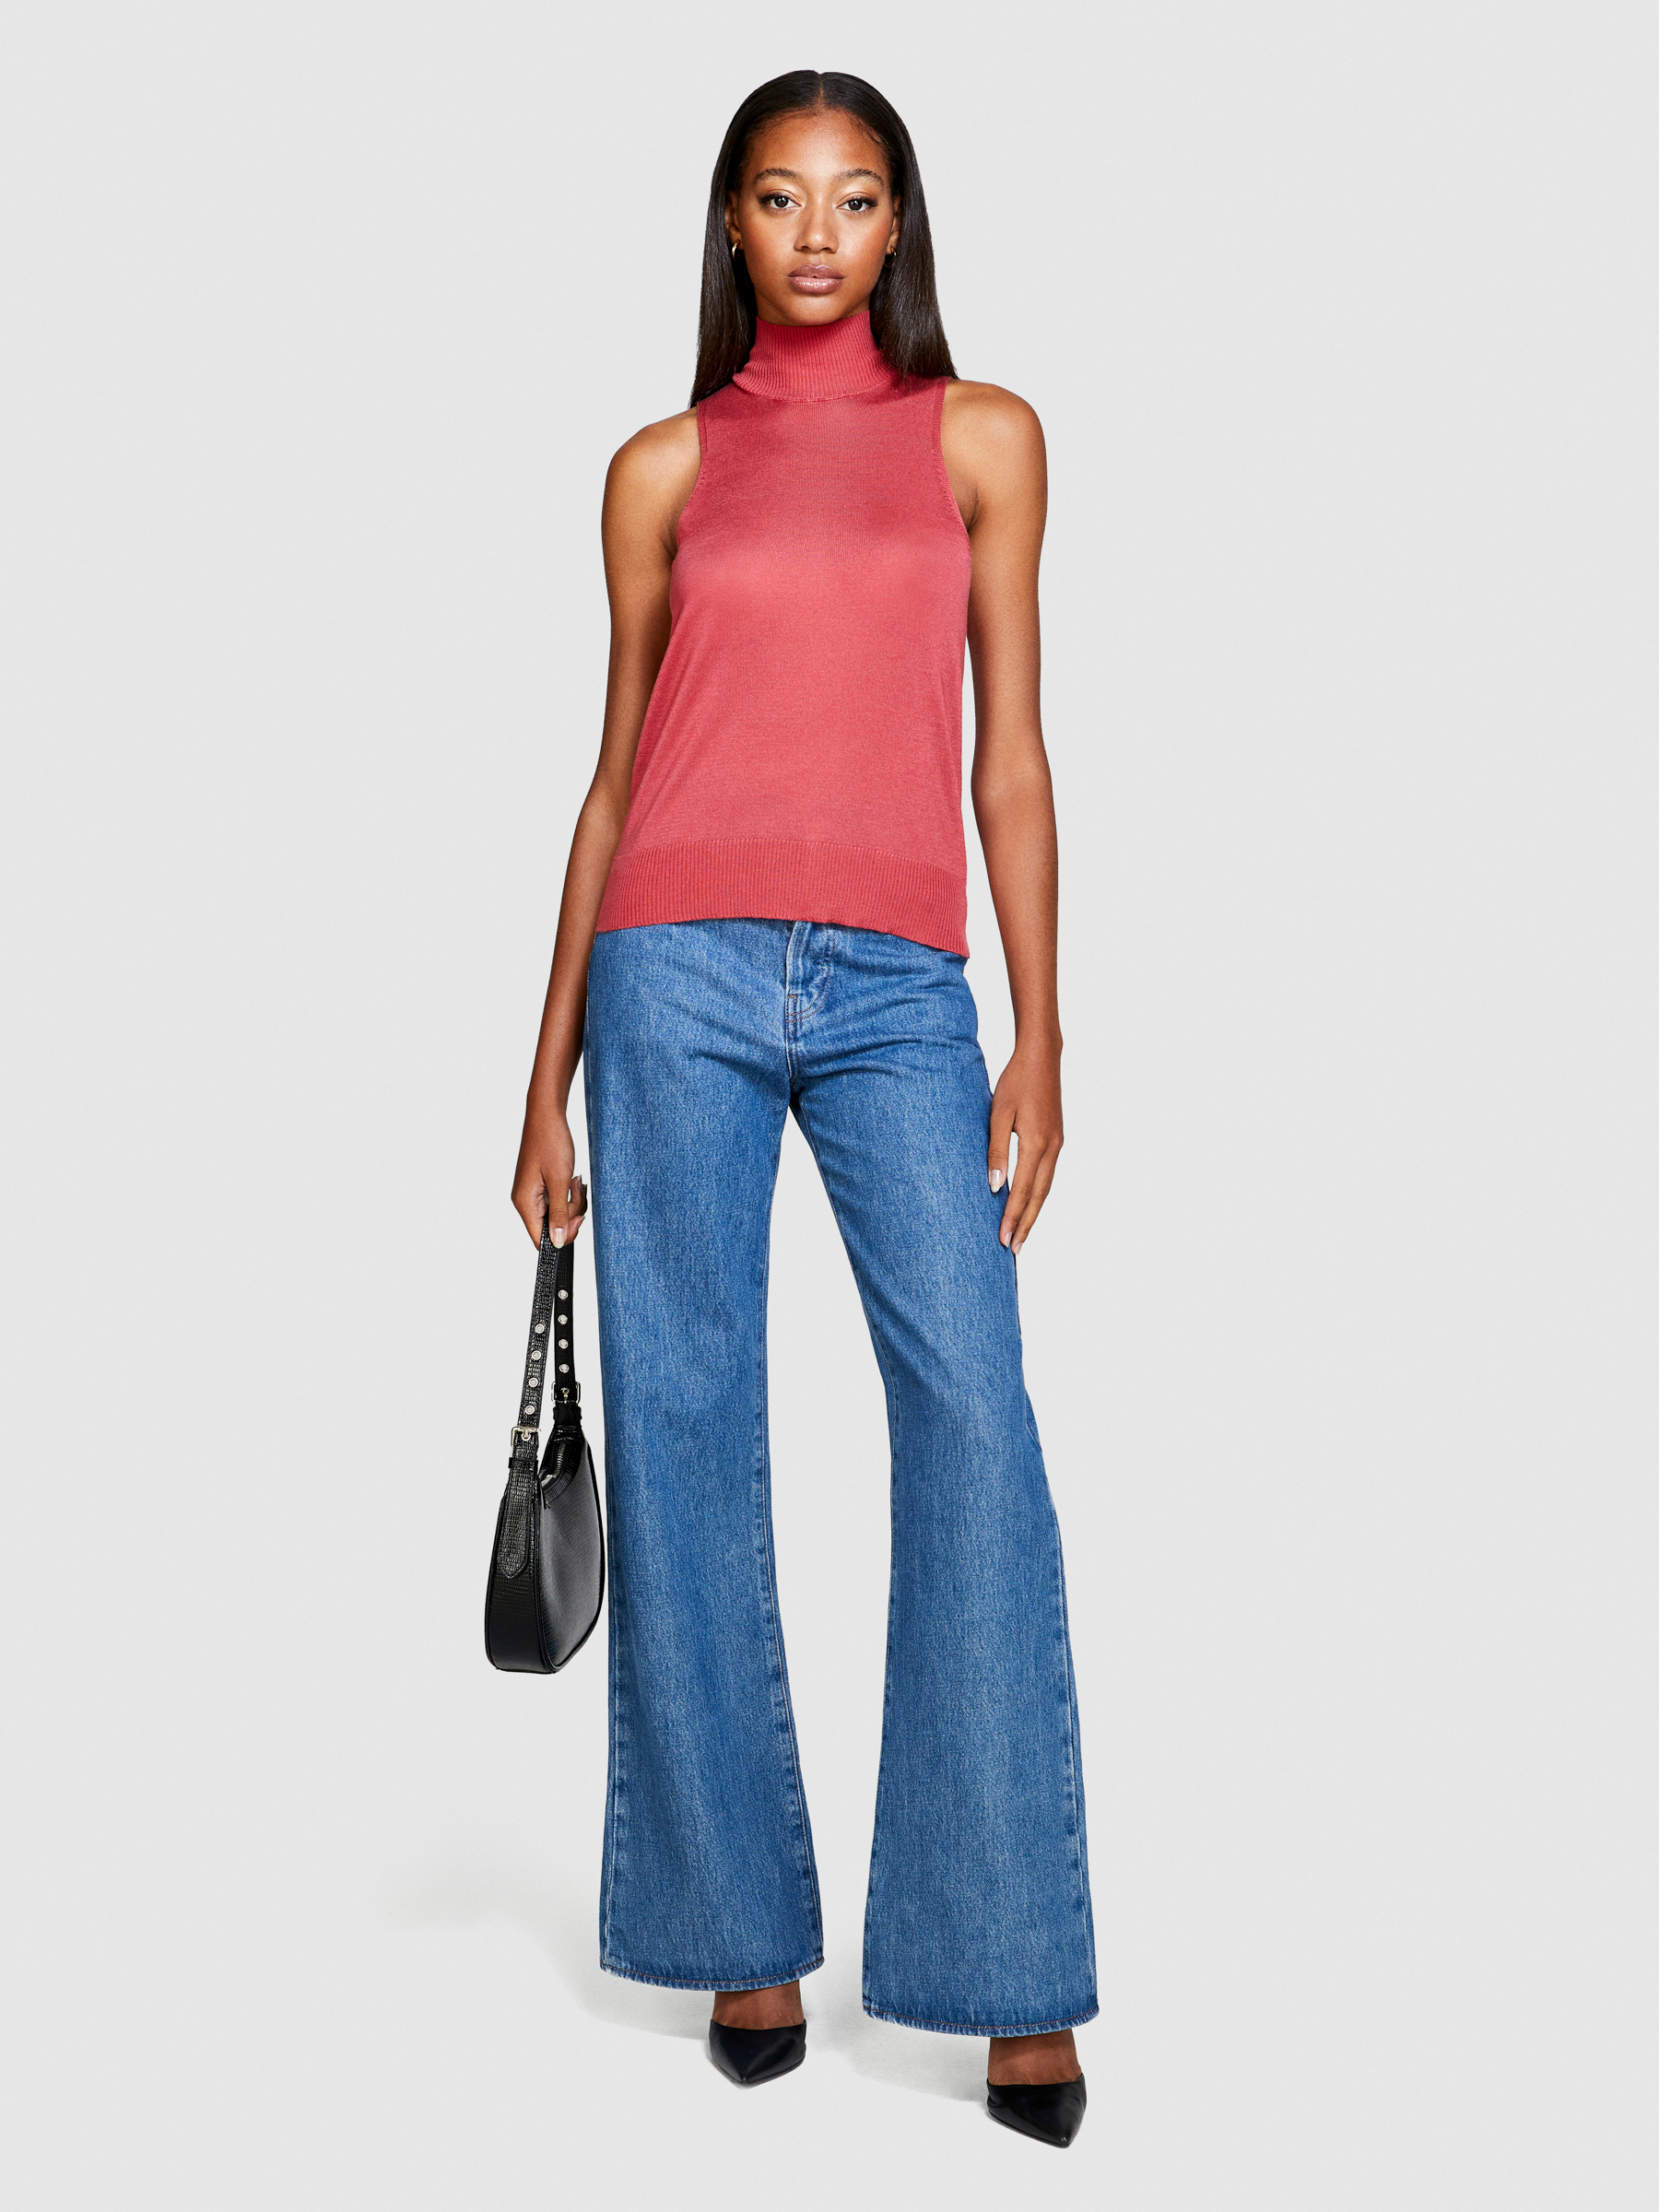 Sisley - Knit Turtleneck Top, Woman, Coral, Size: M